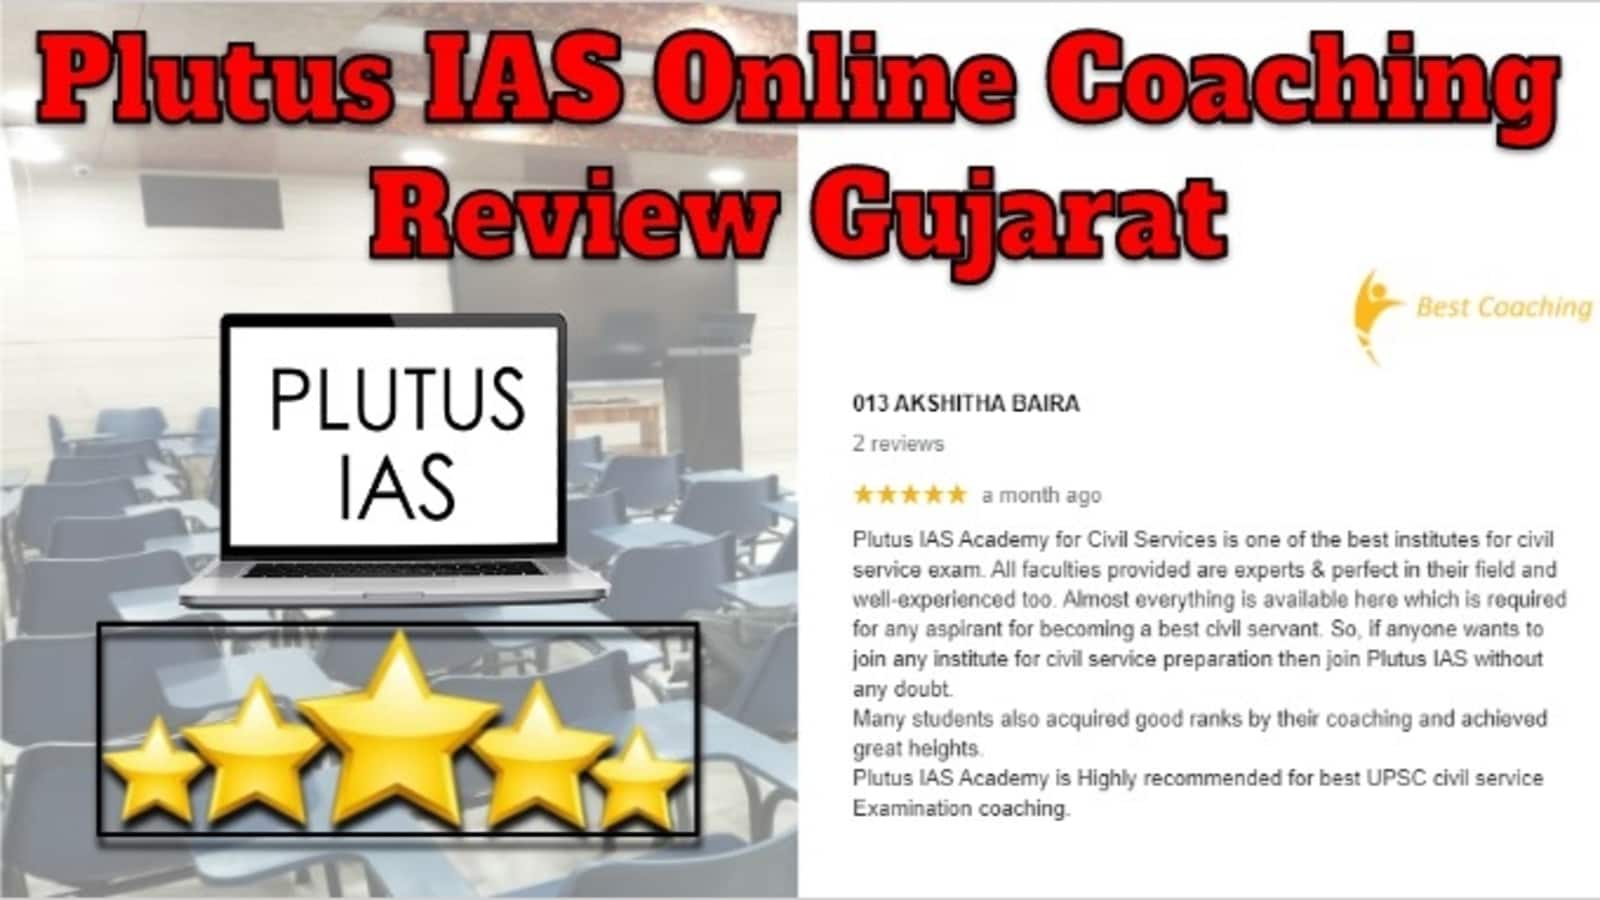 Plutus IAS Online Coaching Review Gujarat